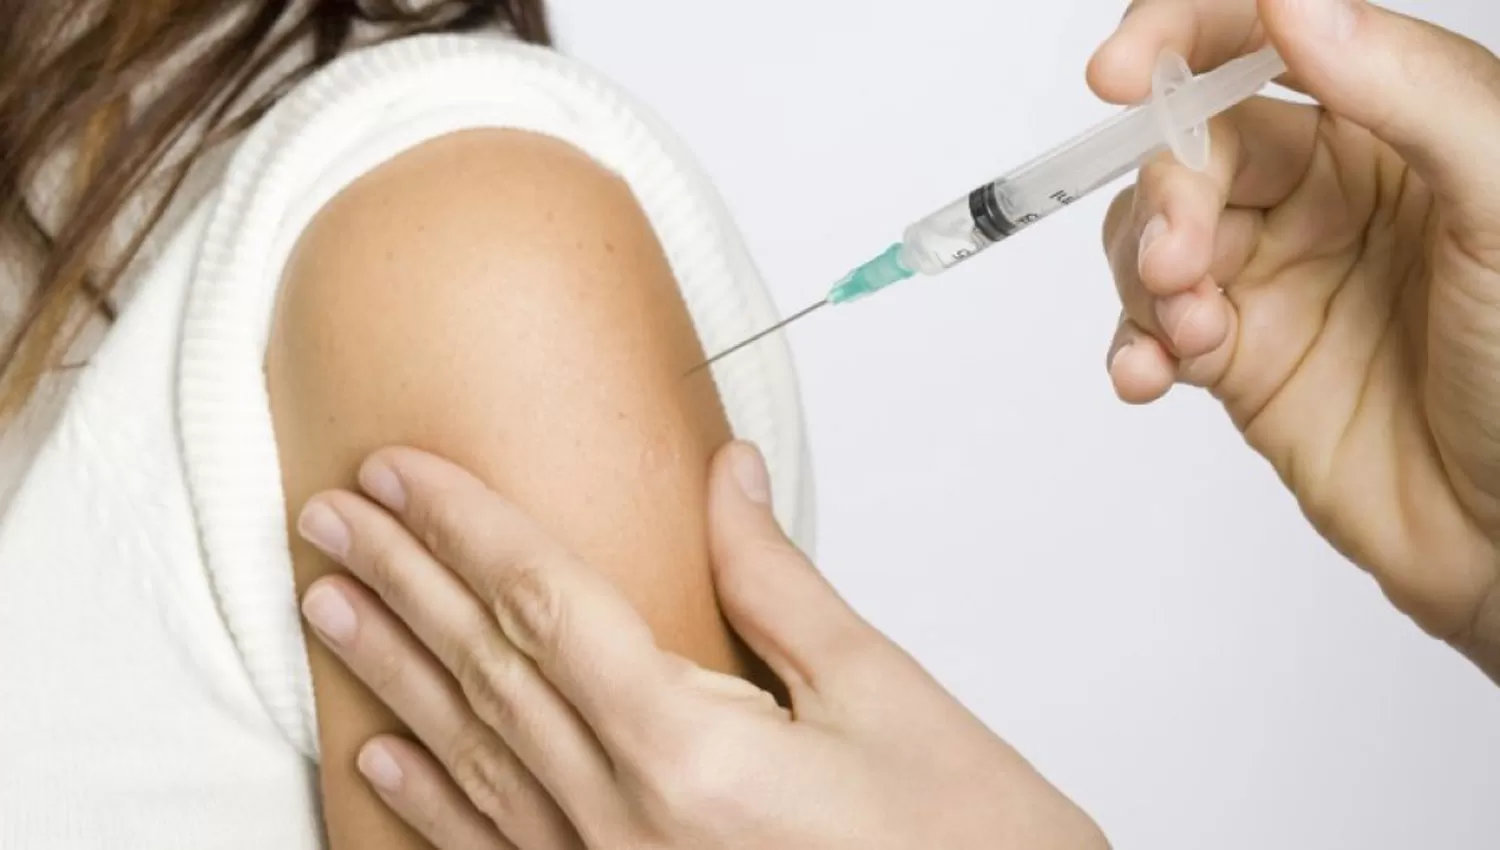 Yedlin advirtió que hay una demora injustificada en la distribución de la vacuna antigripal